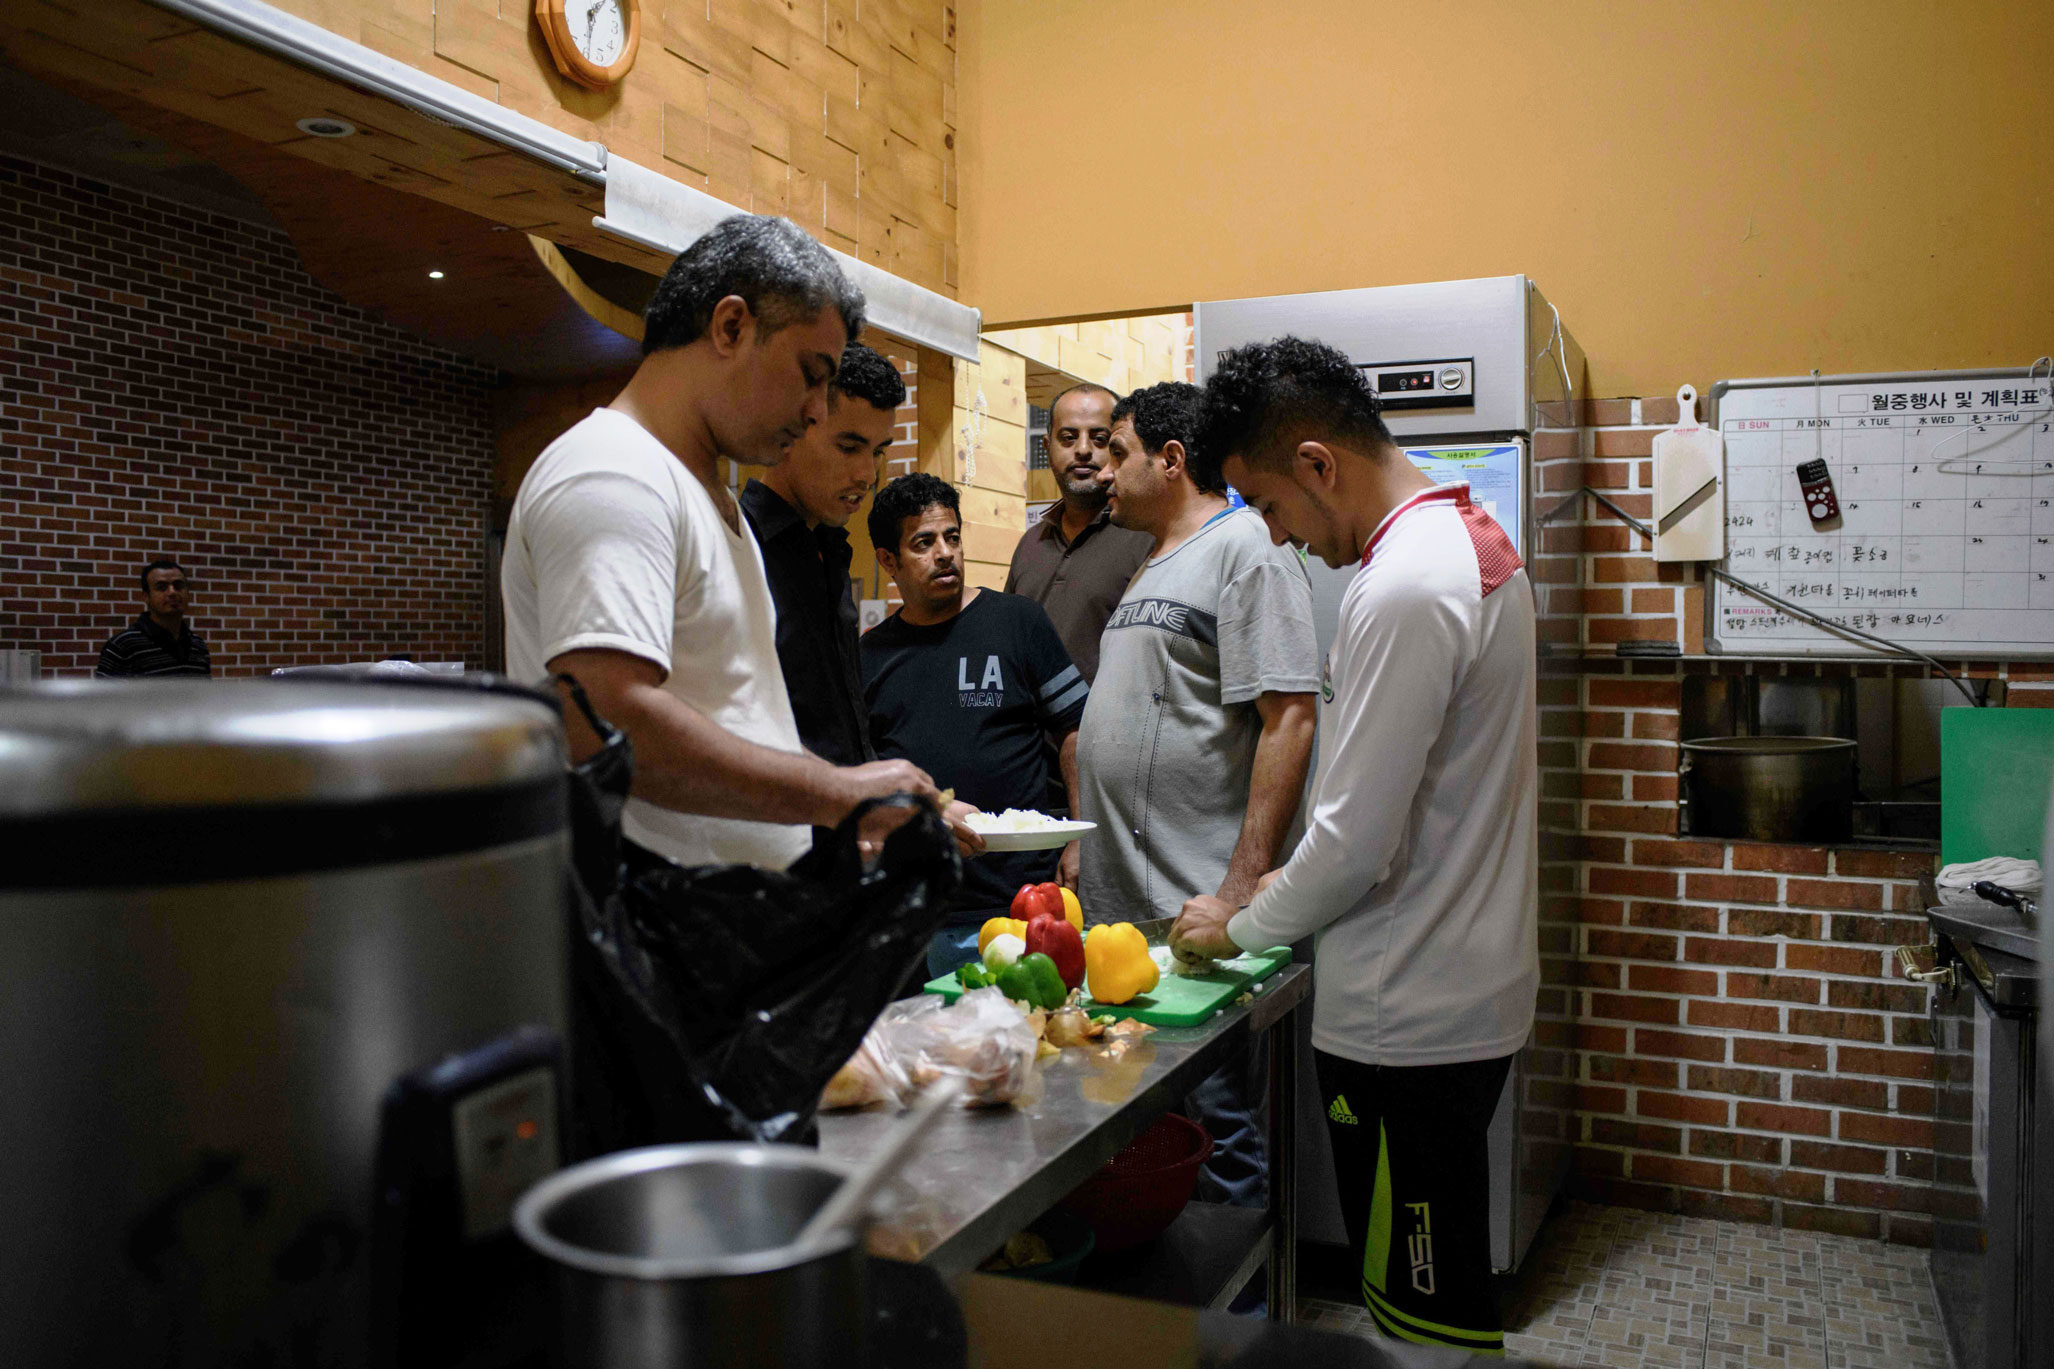 لاجئون يمنيون في مطبخ بكوريا الجنوبية يتشاركون الأكل توفيرا لبعض المال